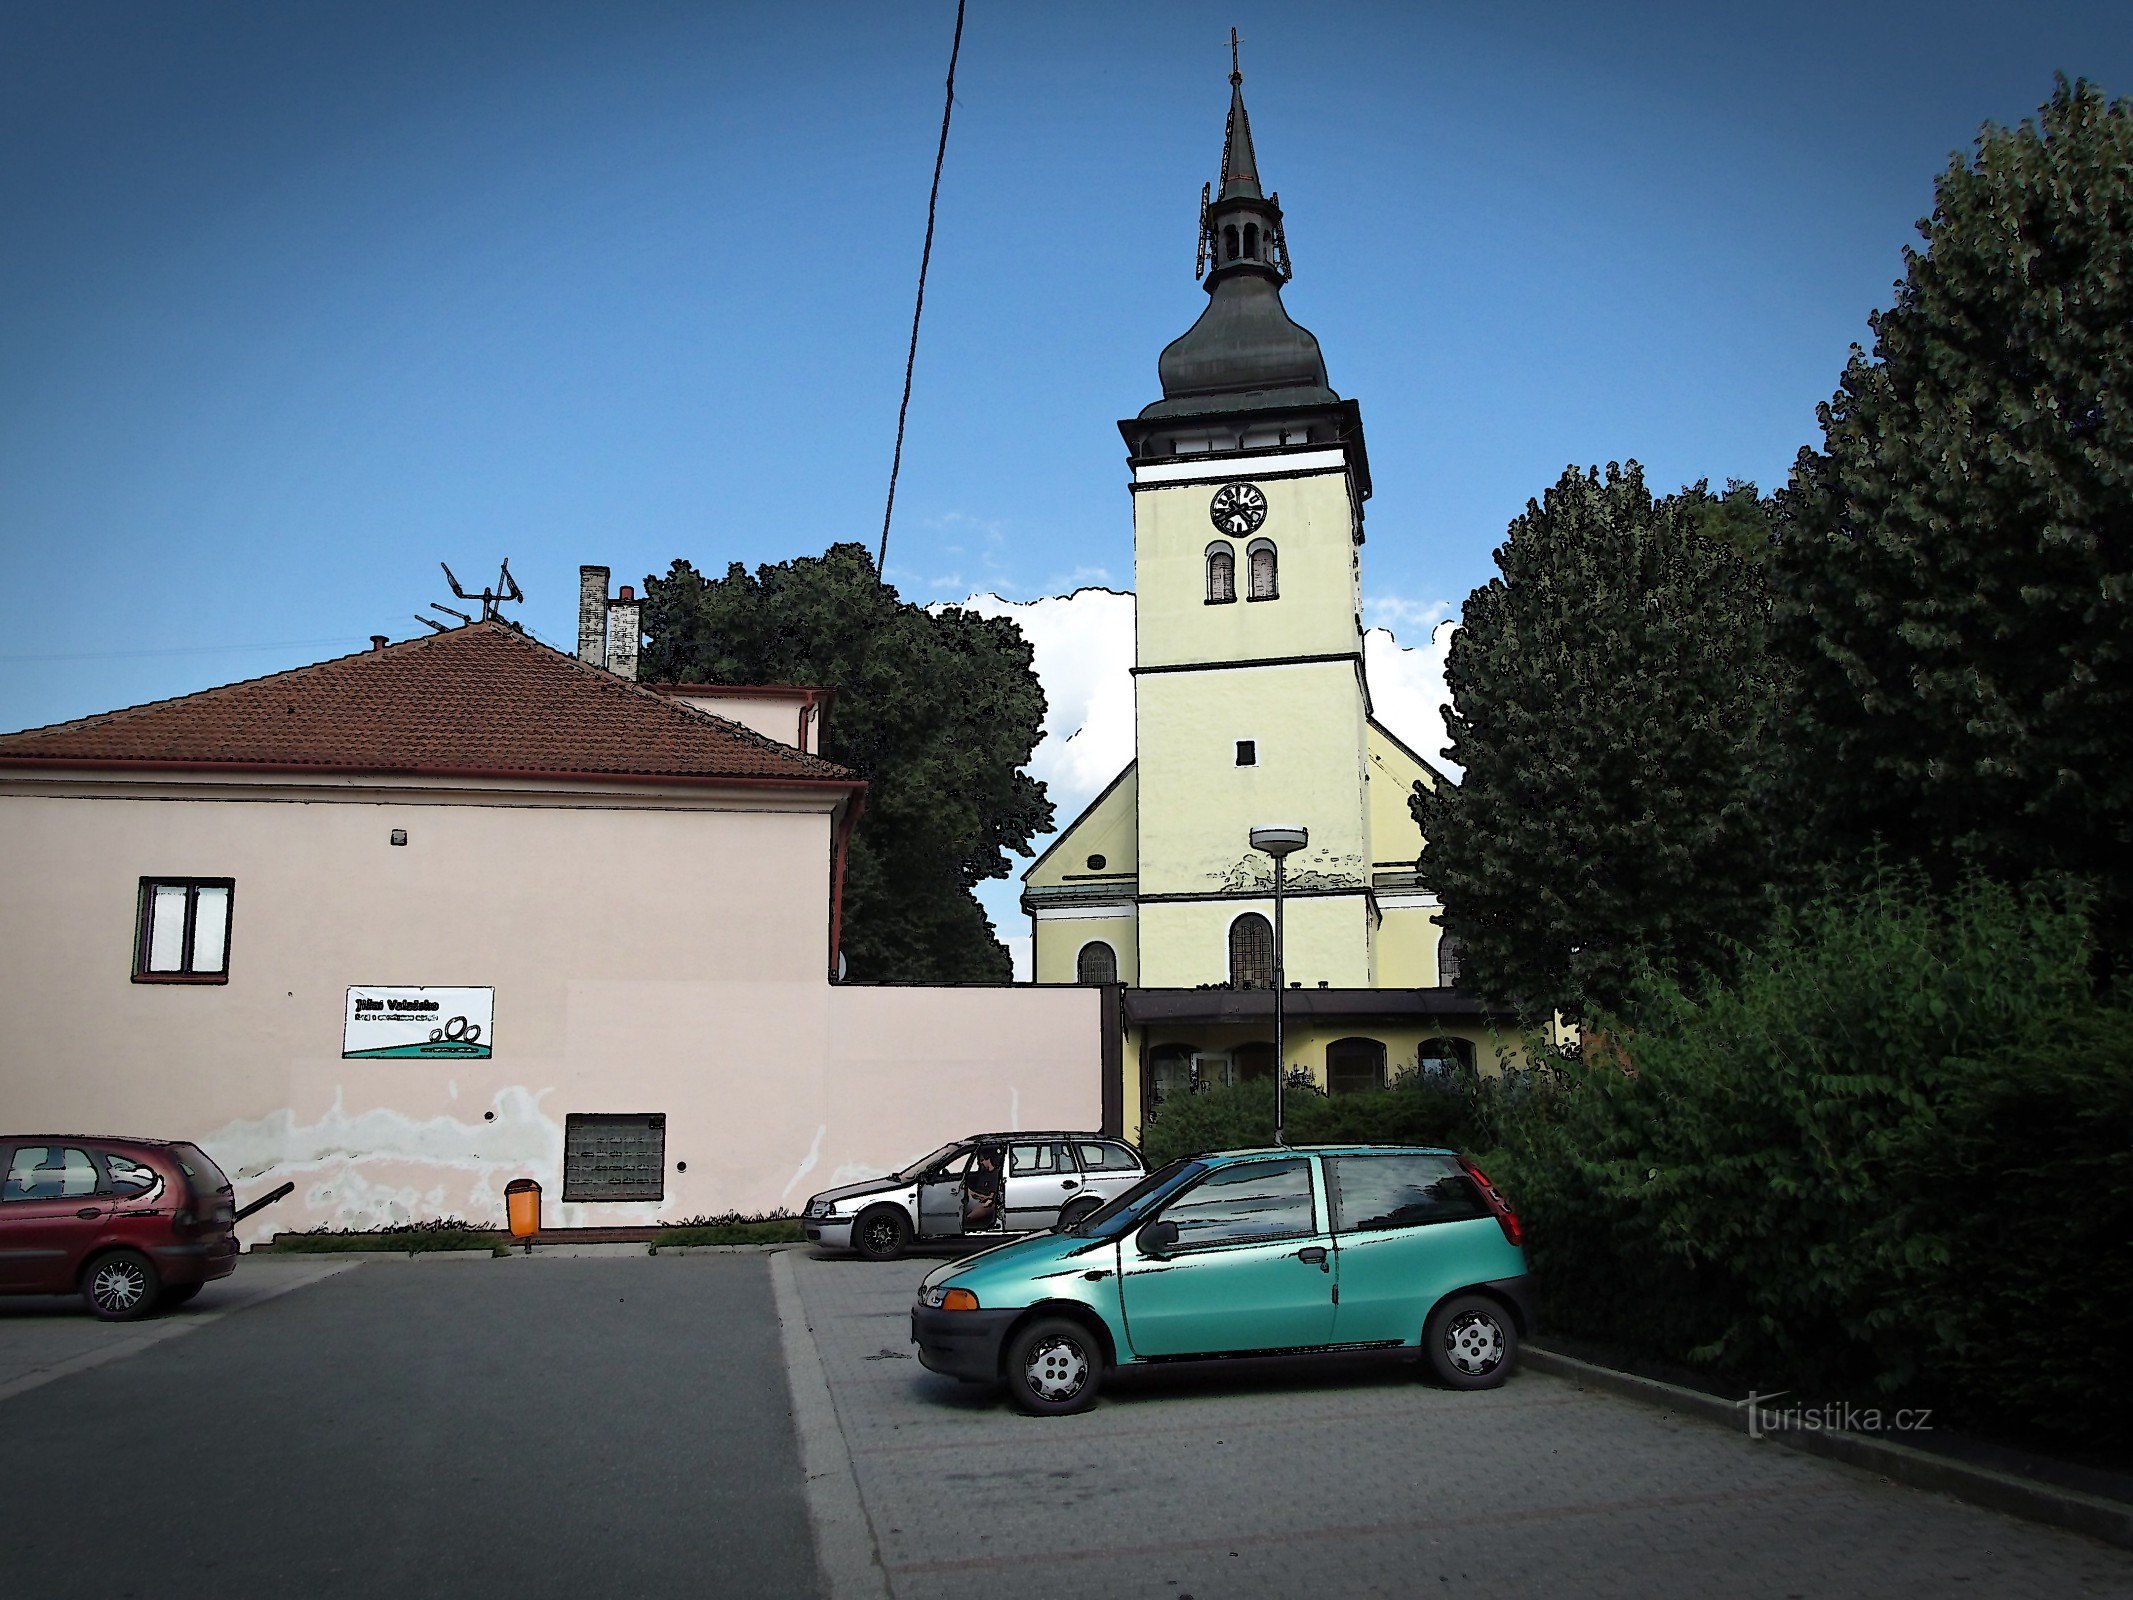 ヴィゾヴィツェ - 聖パウロ教区教会ローレンス